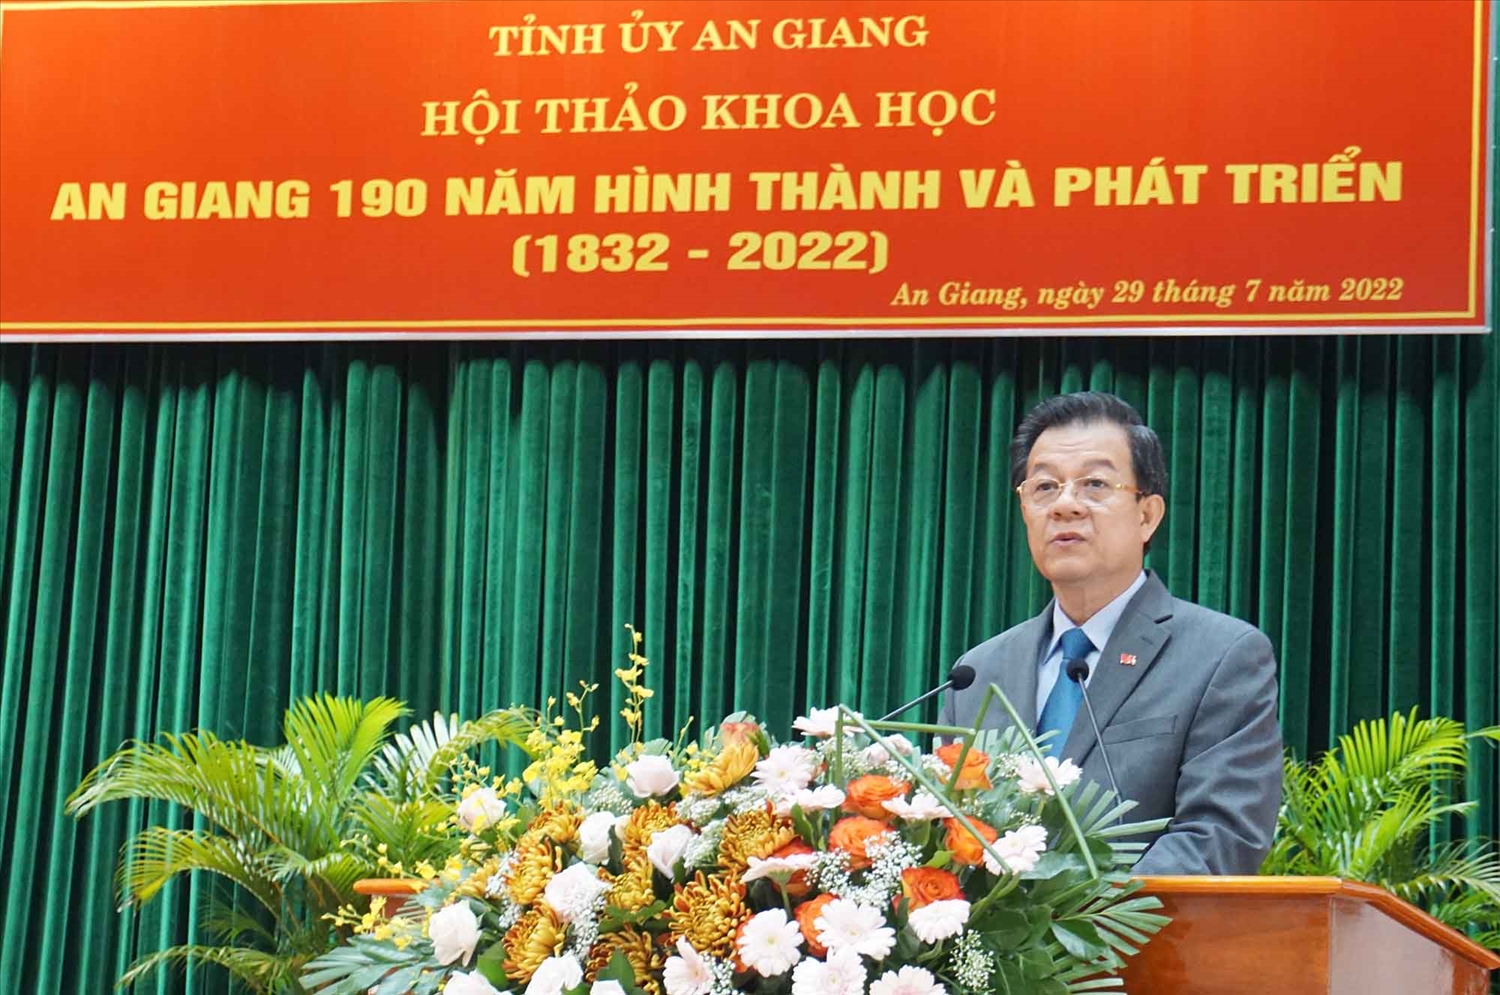 Bí thư Tỉnh ủy An Giang Lê Hồng Quang phát biểu tại Hội thảo